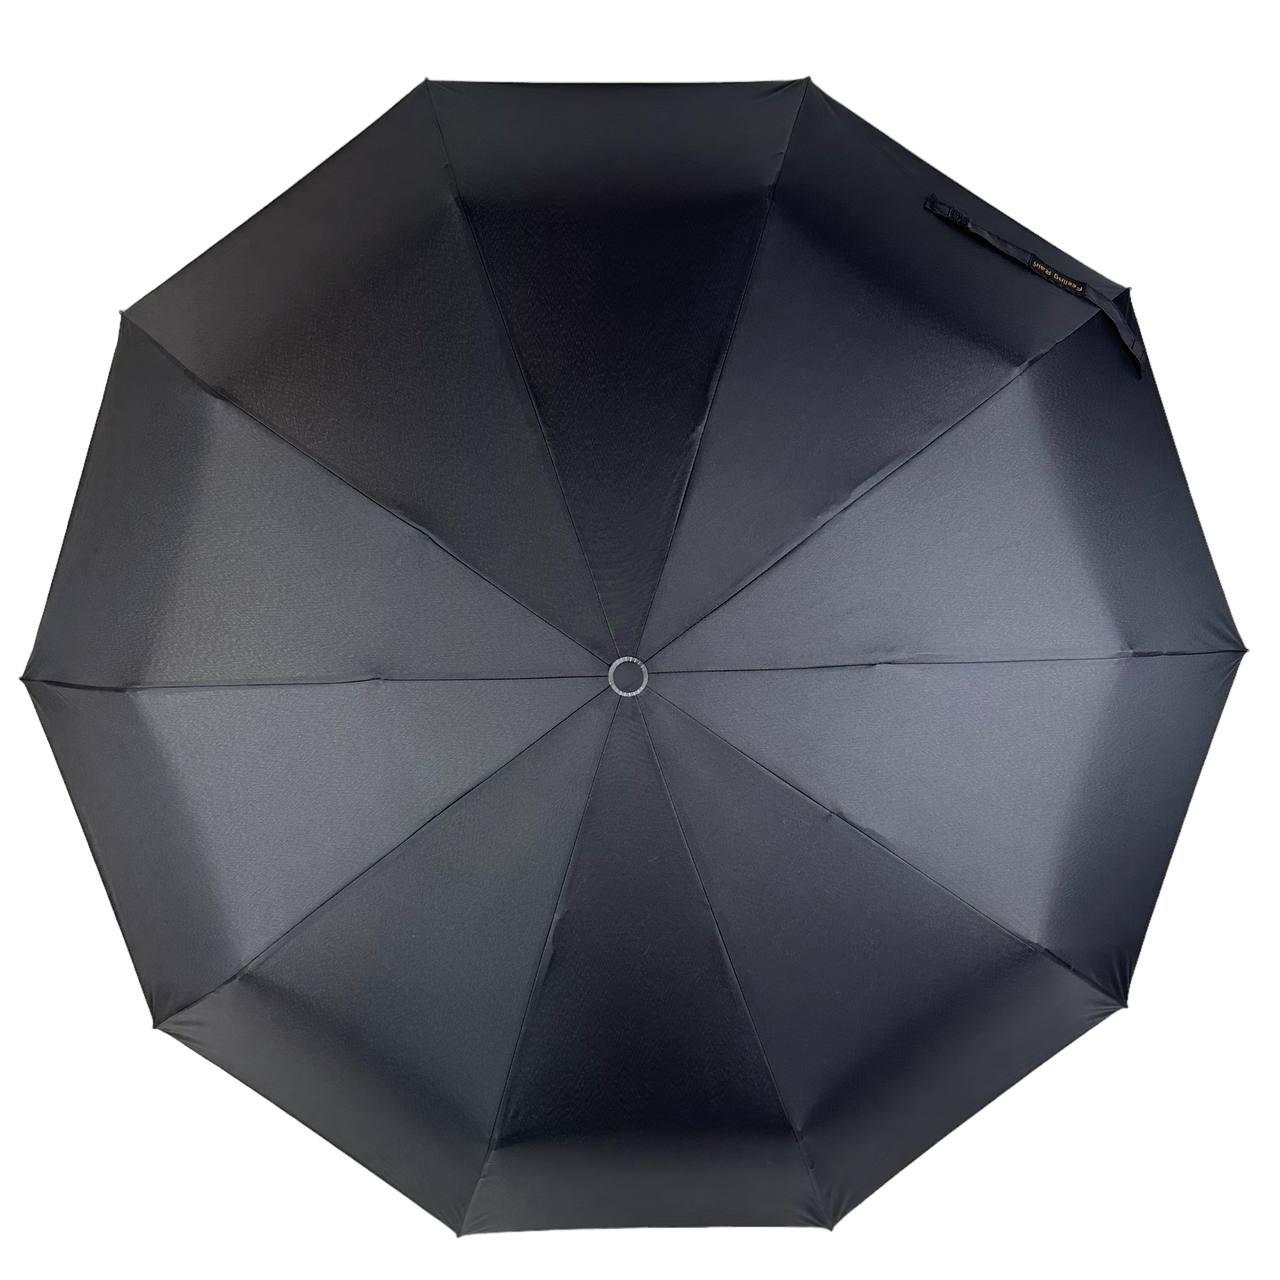 Мужской складной зонтик полный автомат Feeling Rain 104 см черный - фото 1